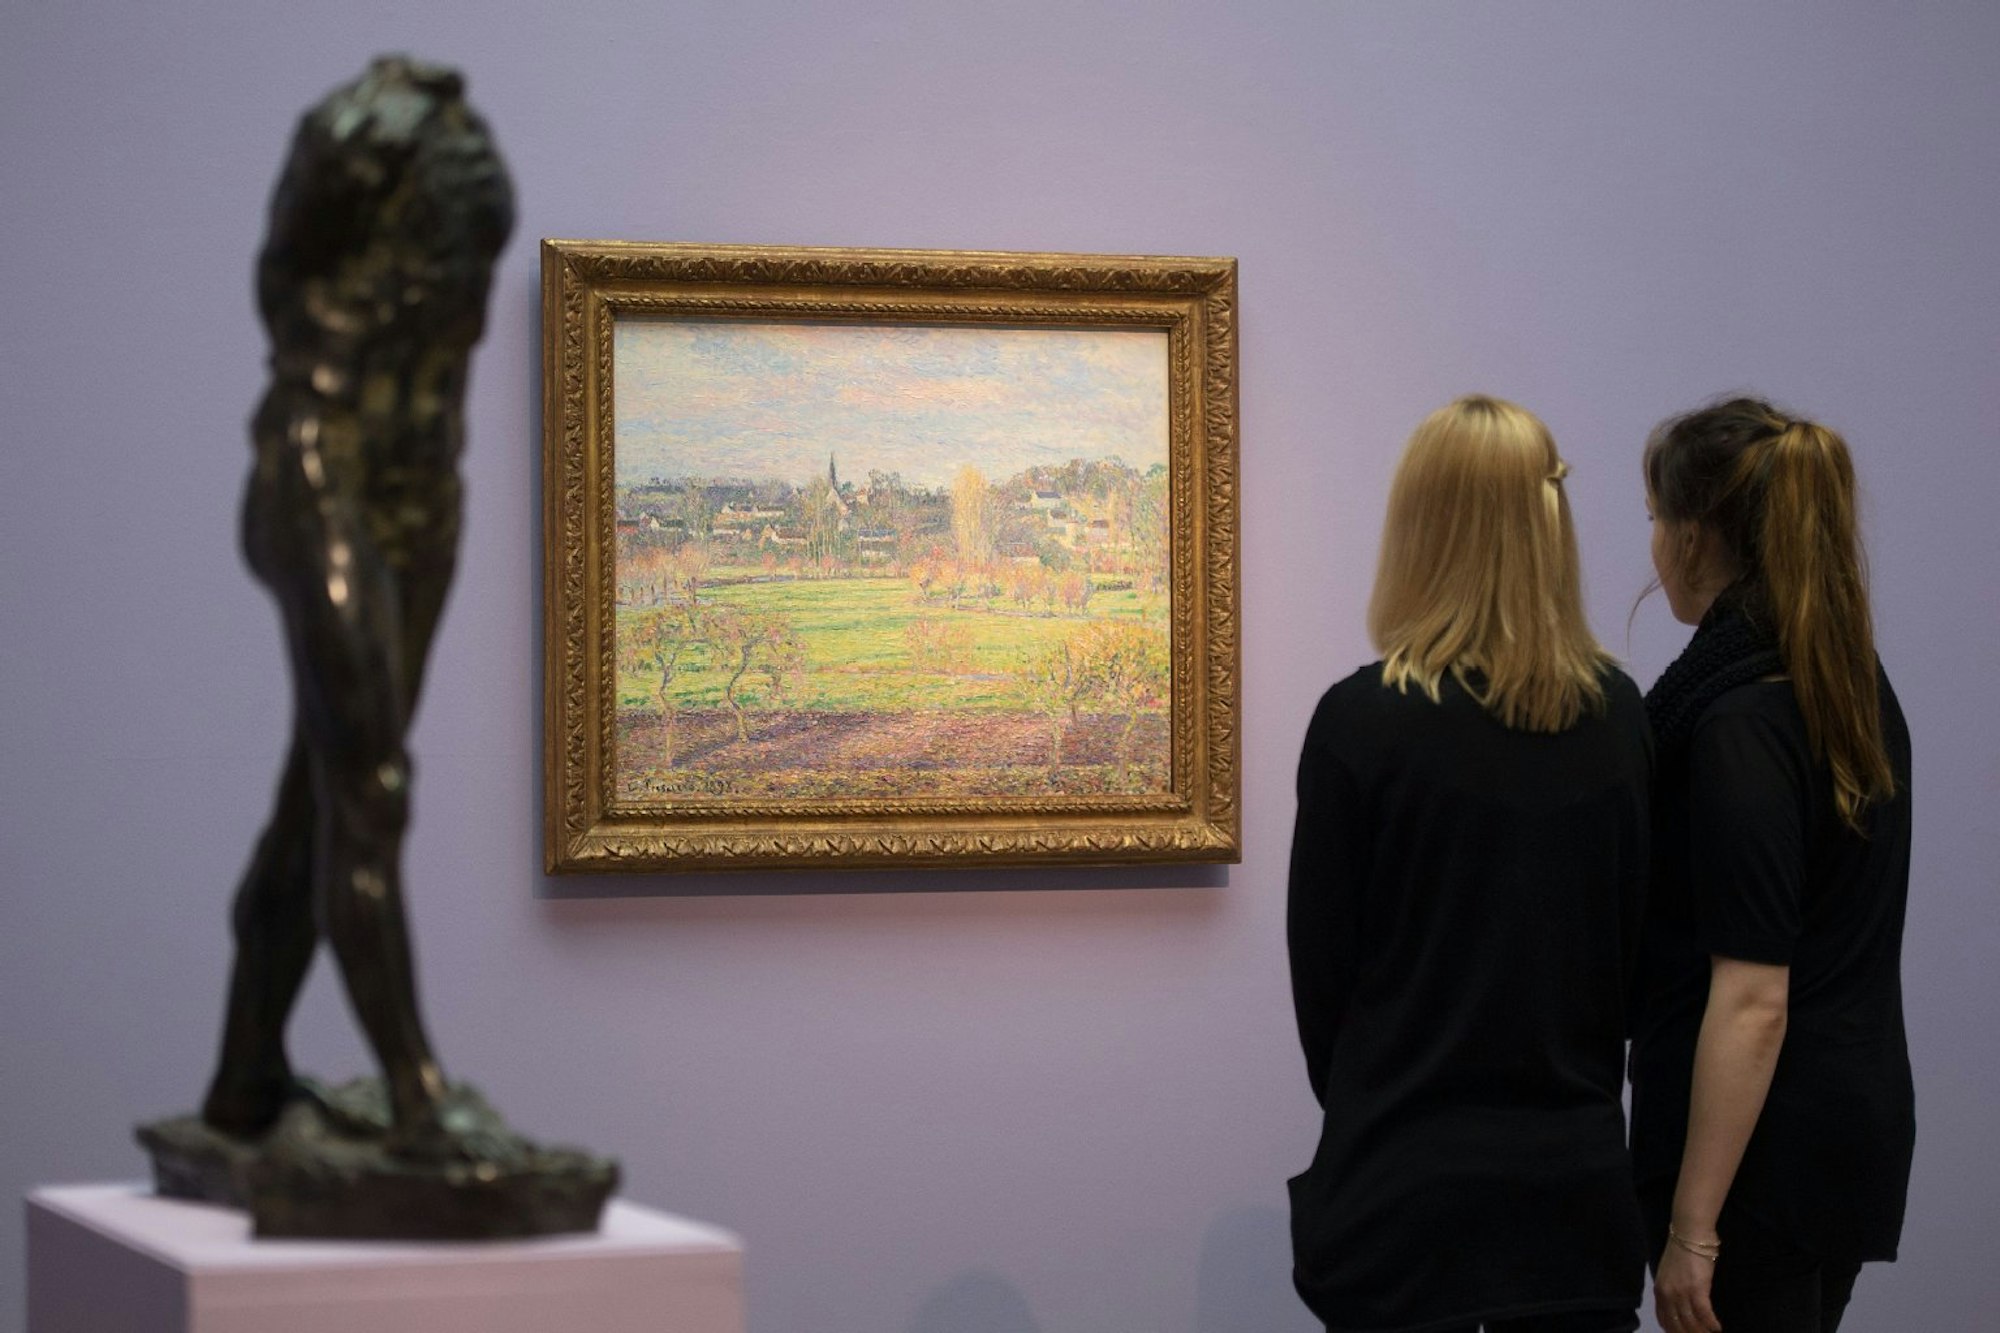 Das Von-der-Heydt-Museum in Wuppertal präsentiert Werke von Claude Monet, Franz Marc, Pablo Picasso, Otto Dix und Francis Bacon.